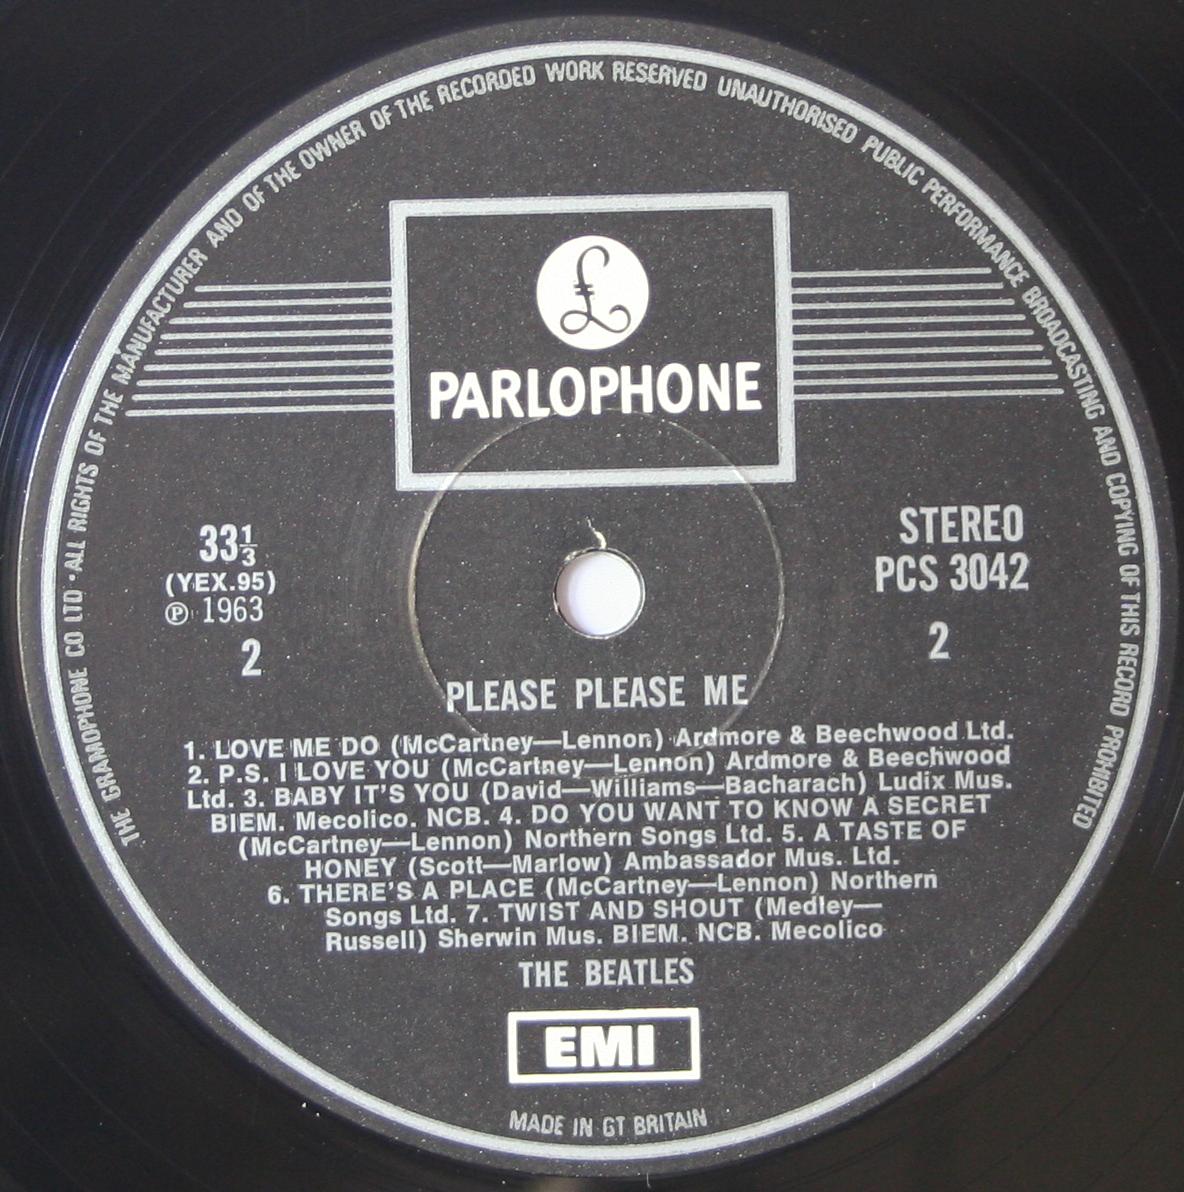 The Beatles Collection » Please Please Me, Parlophone, PCS 3042.